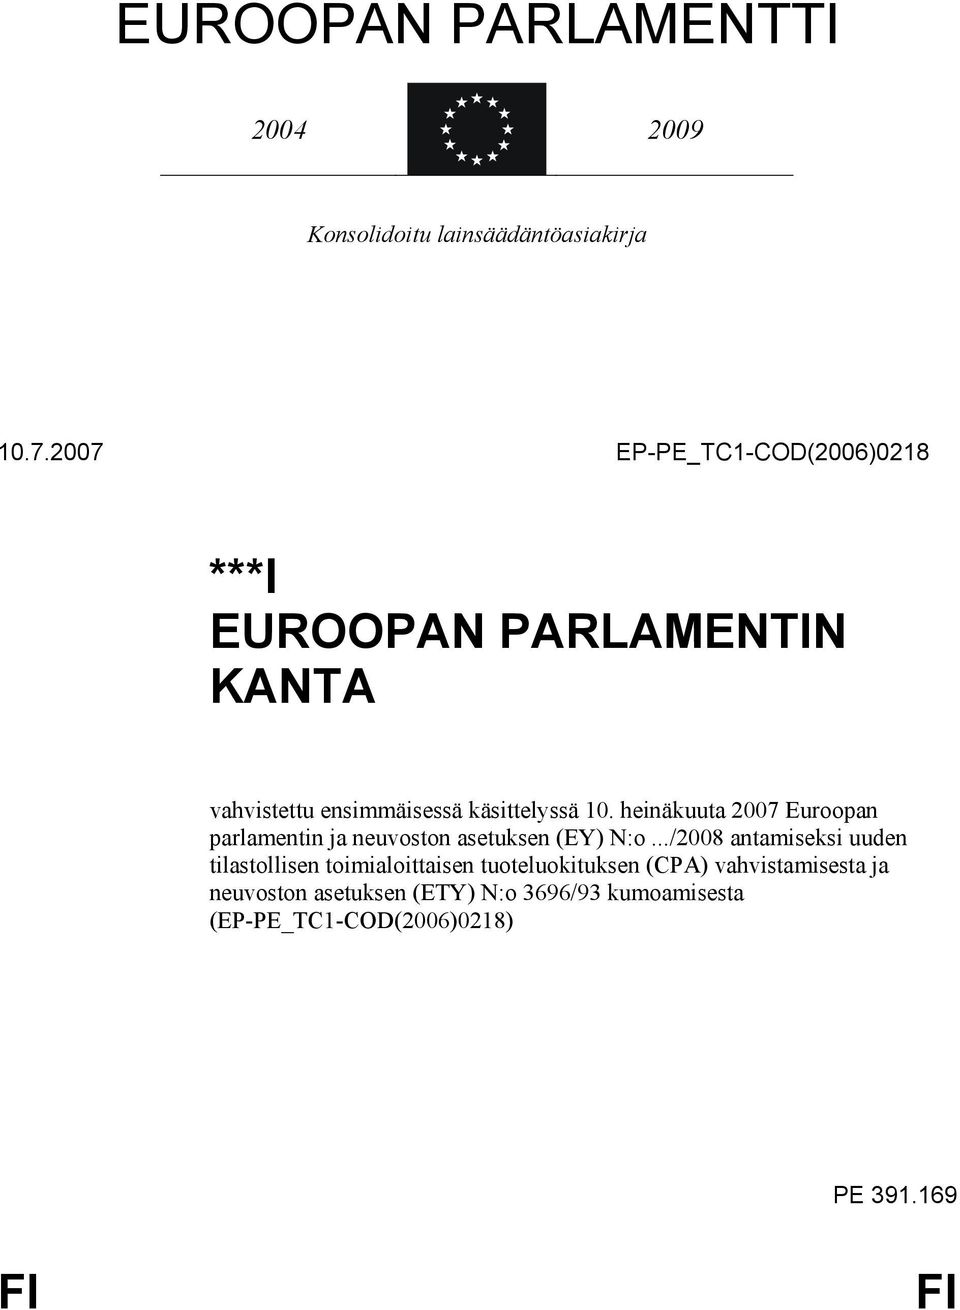 heinäkuuta 2007 Euroopan parlamentin ja neuvoston asetuksen (EY) N:o.